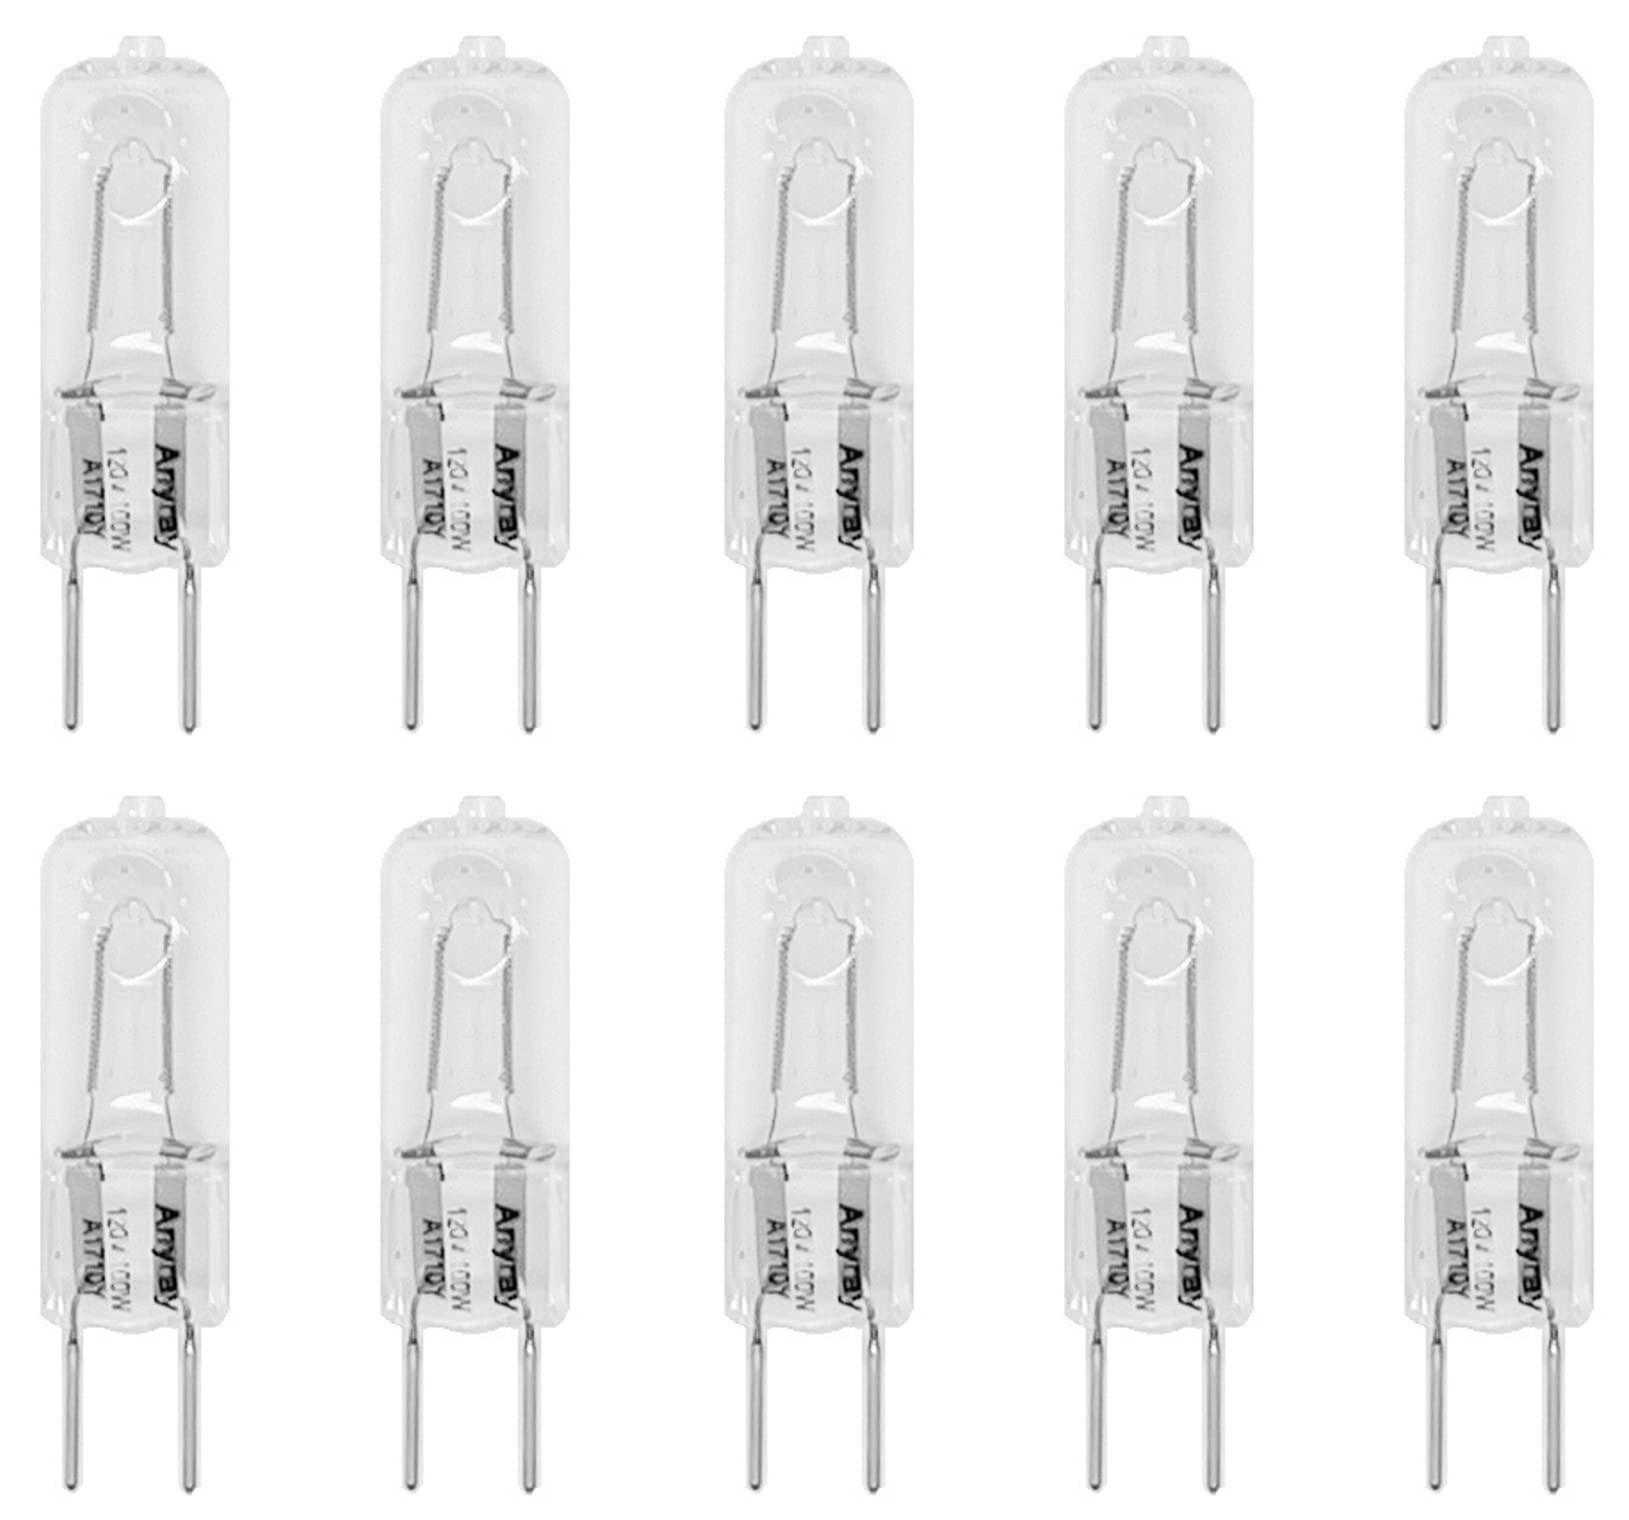 anyray (10)-pack 100w g8 100-watt 130v 1300-lumen gy8.6 t4 halogen light bulb